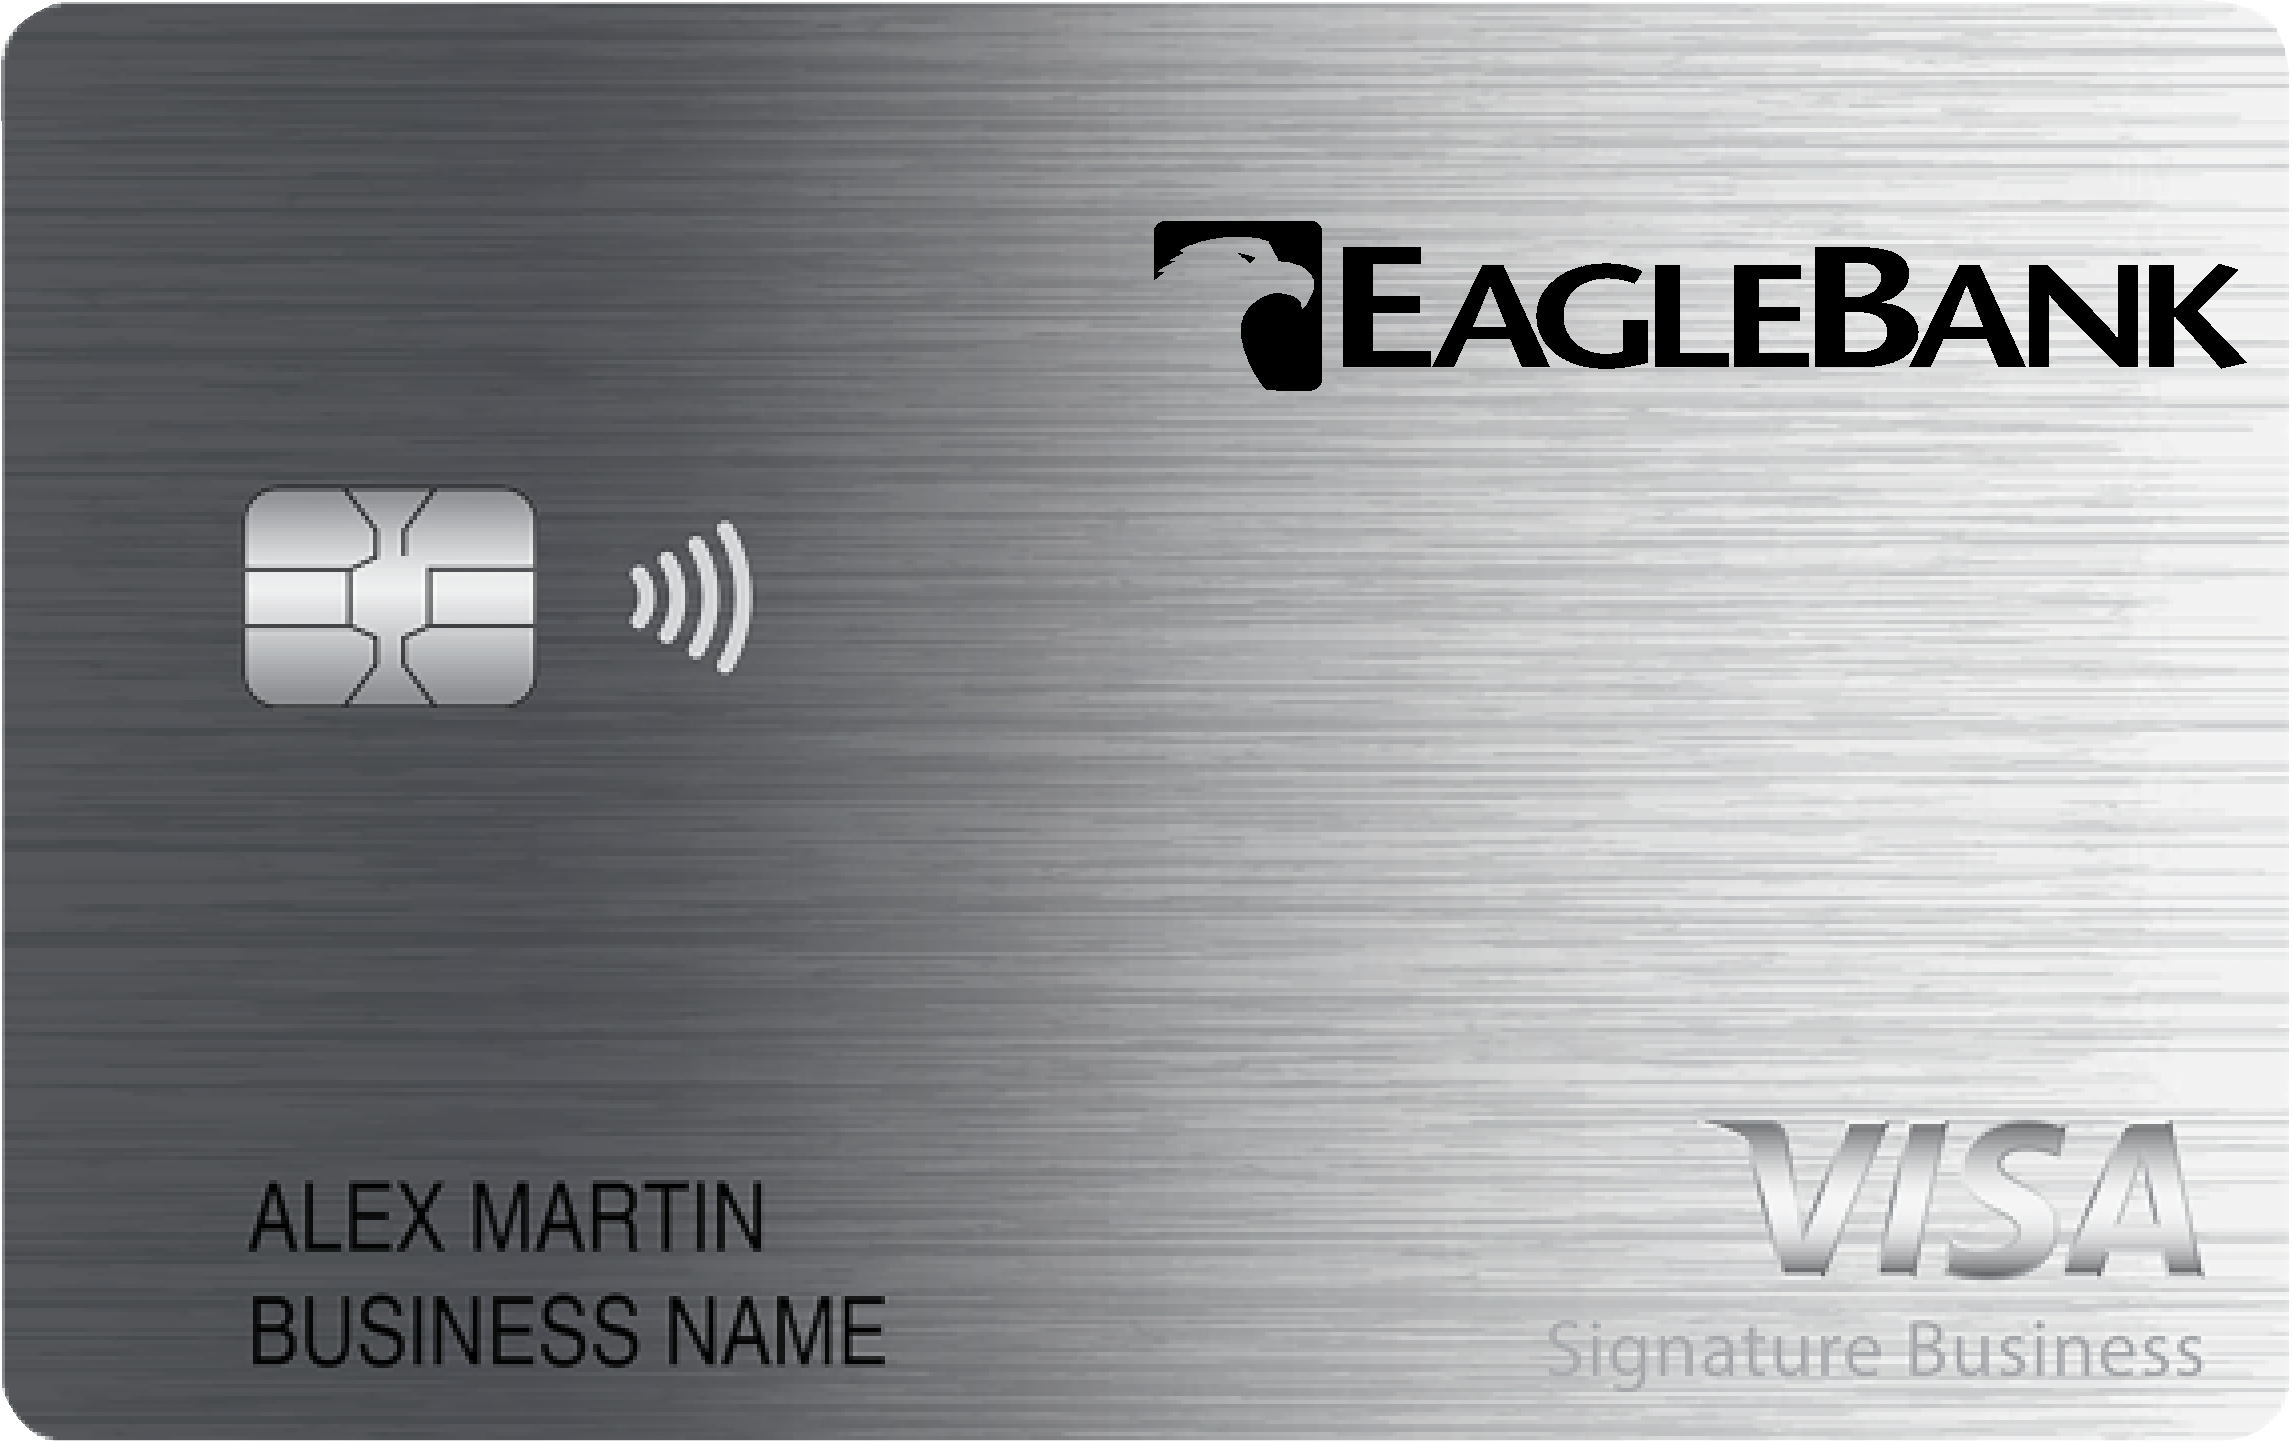 EagleBank Smart Business Rewards Card